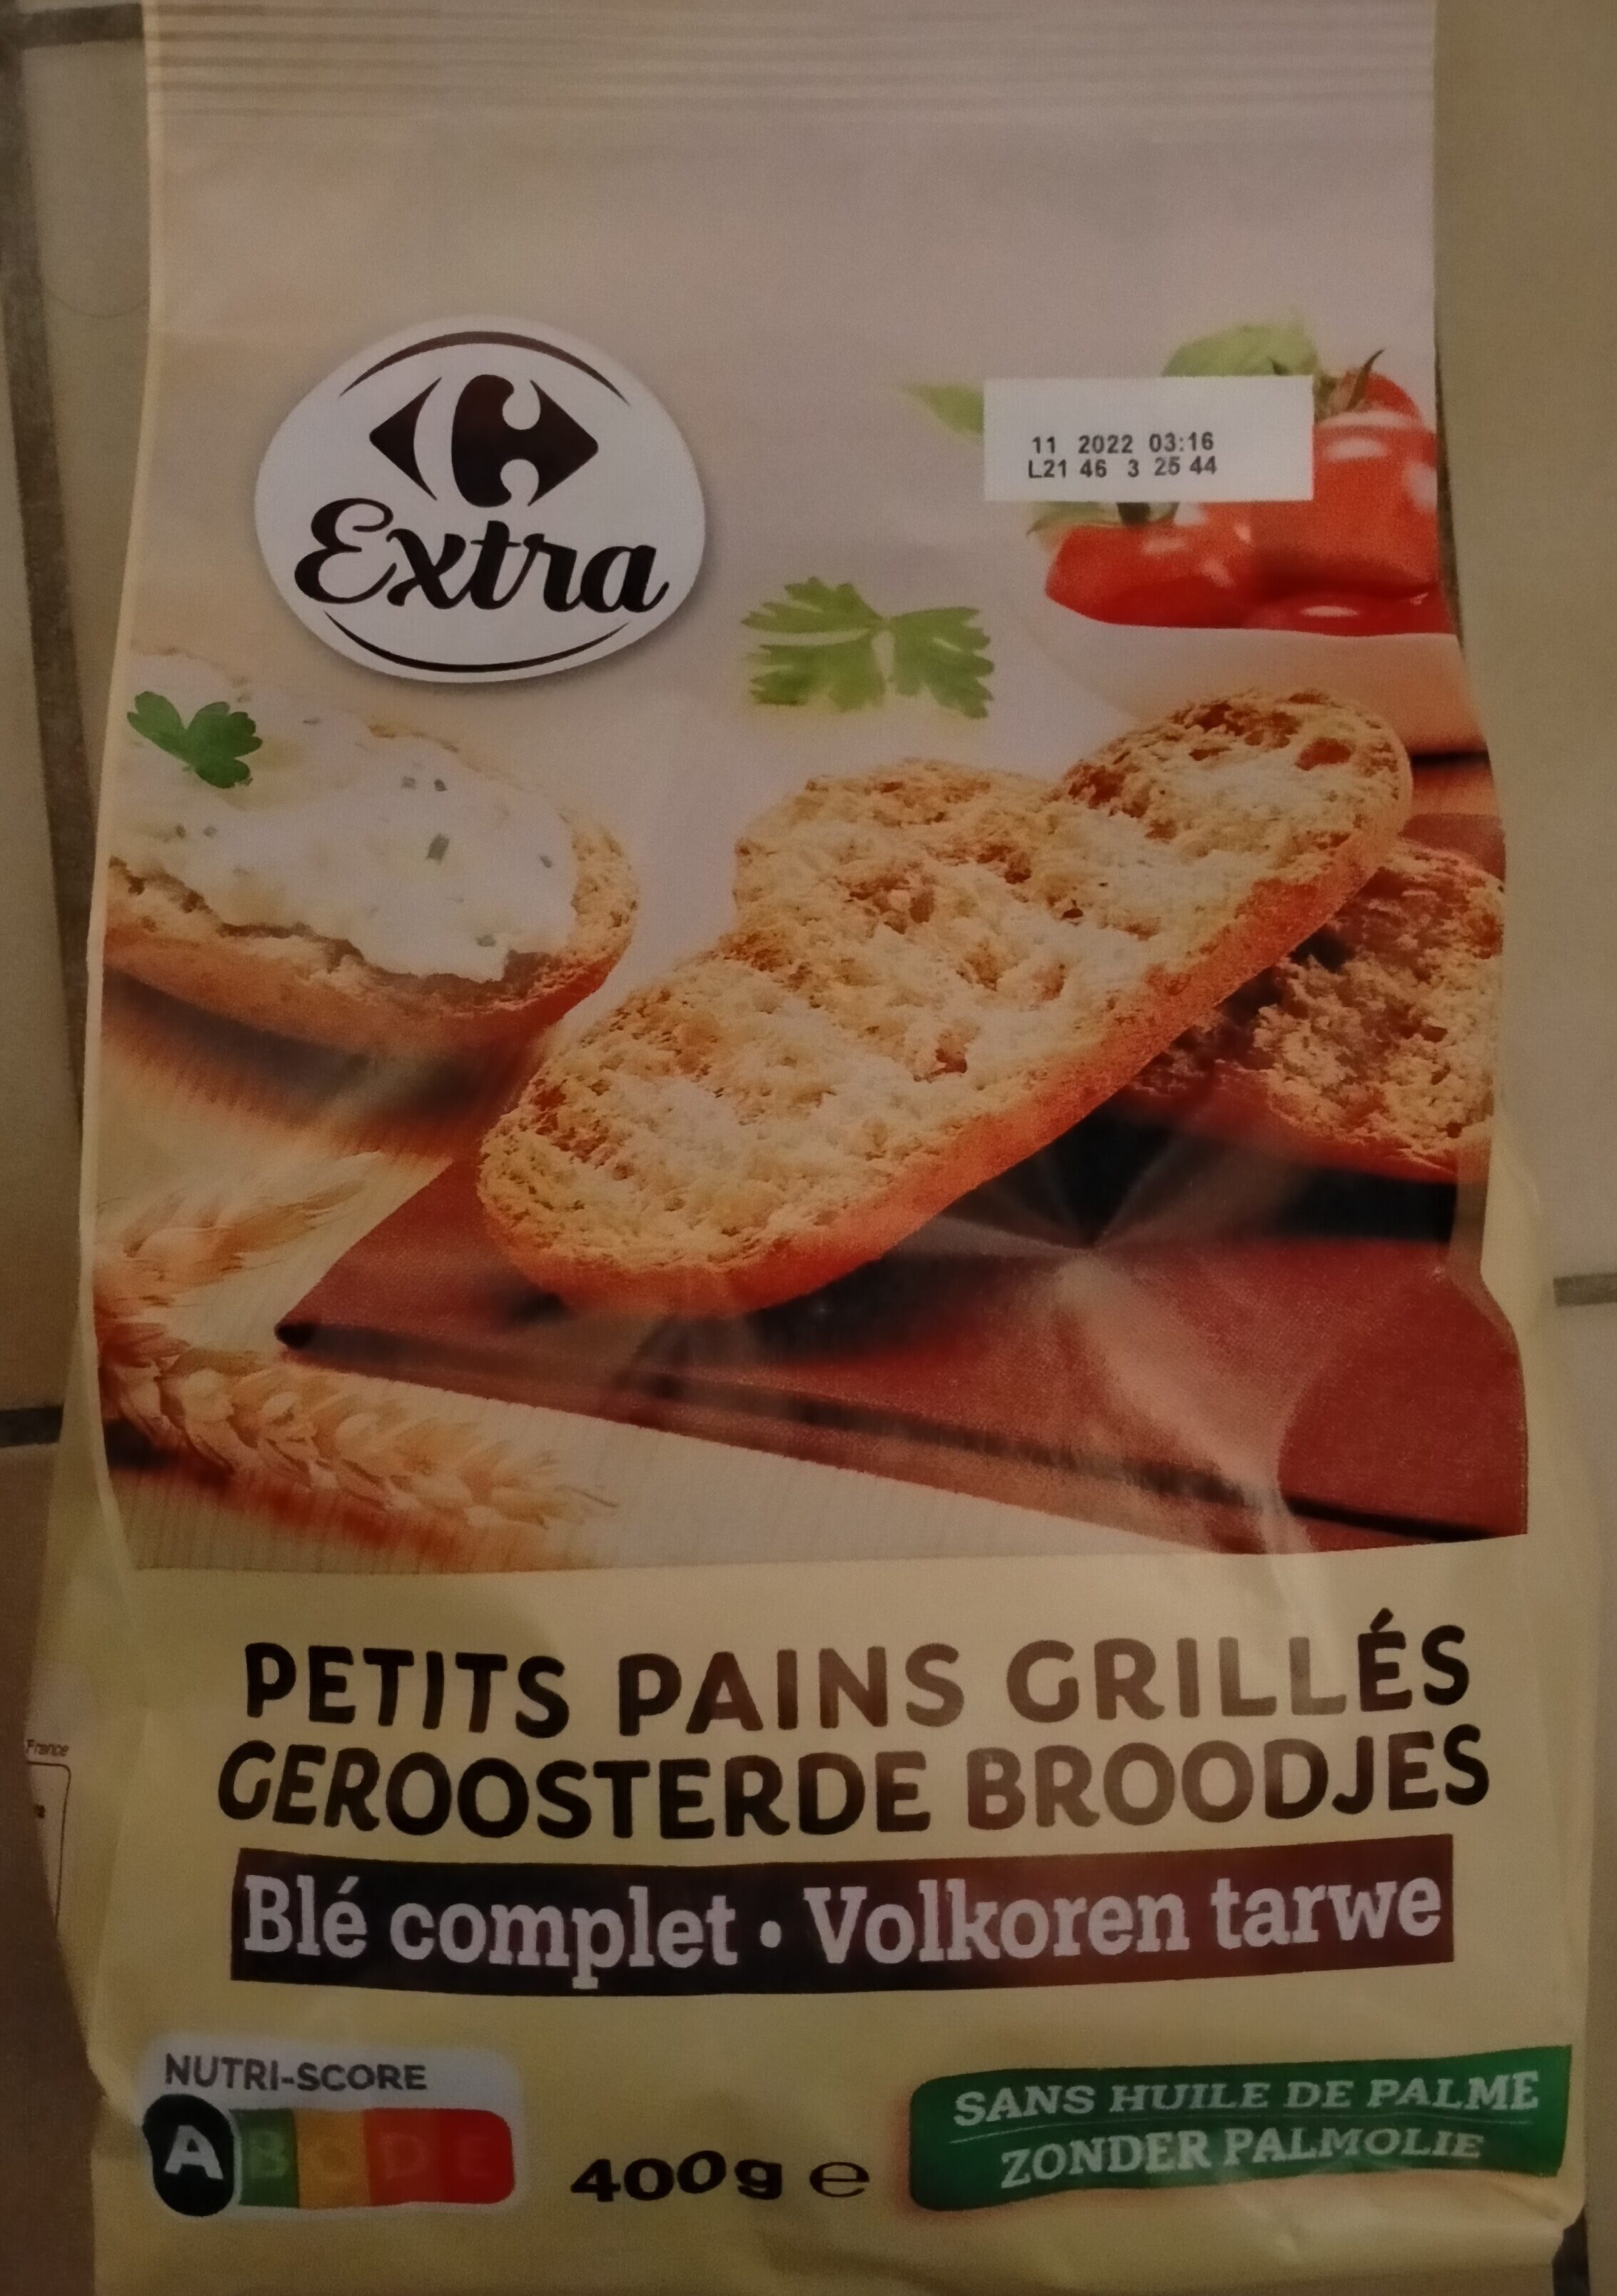 Petits pains grilles - Produkt - fr